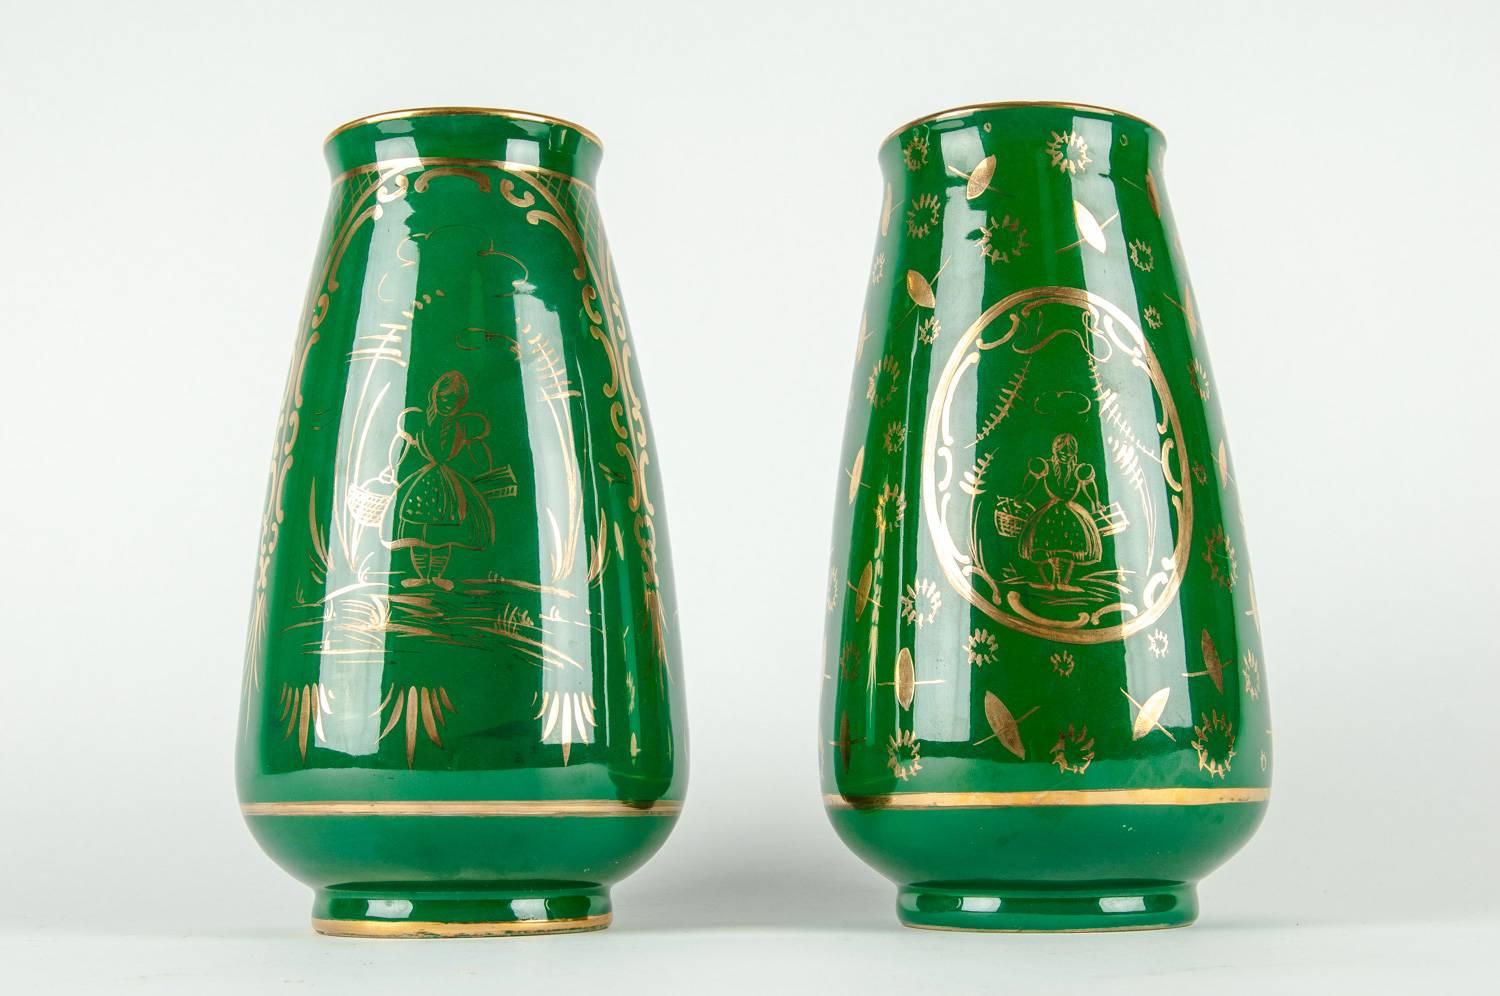 Mitte des 20. Jahrhunderts Paar Porzellan dekorative Vasen / Stücke mit äußeren vergoldeten Design-Details. Jede Vase ist in hervorragendem Vintage-Zustand. Unterzeichnete und nummerierte Herstellermarke. Jede Vase ist etwa 10 cm hoch und hat einen